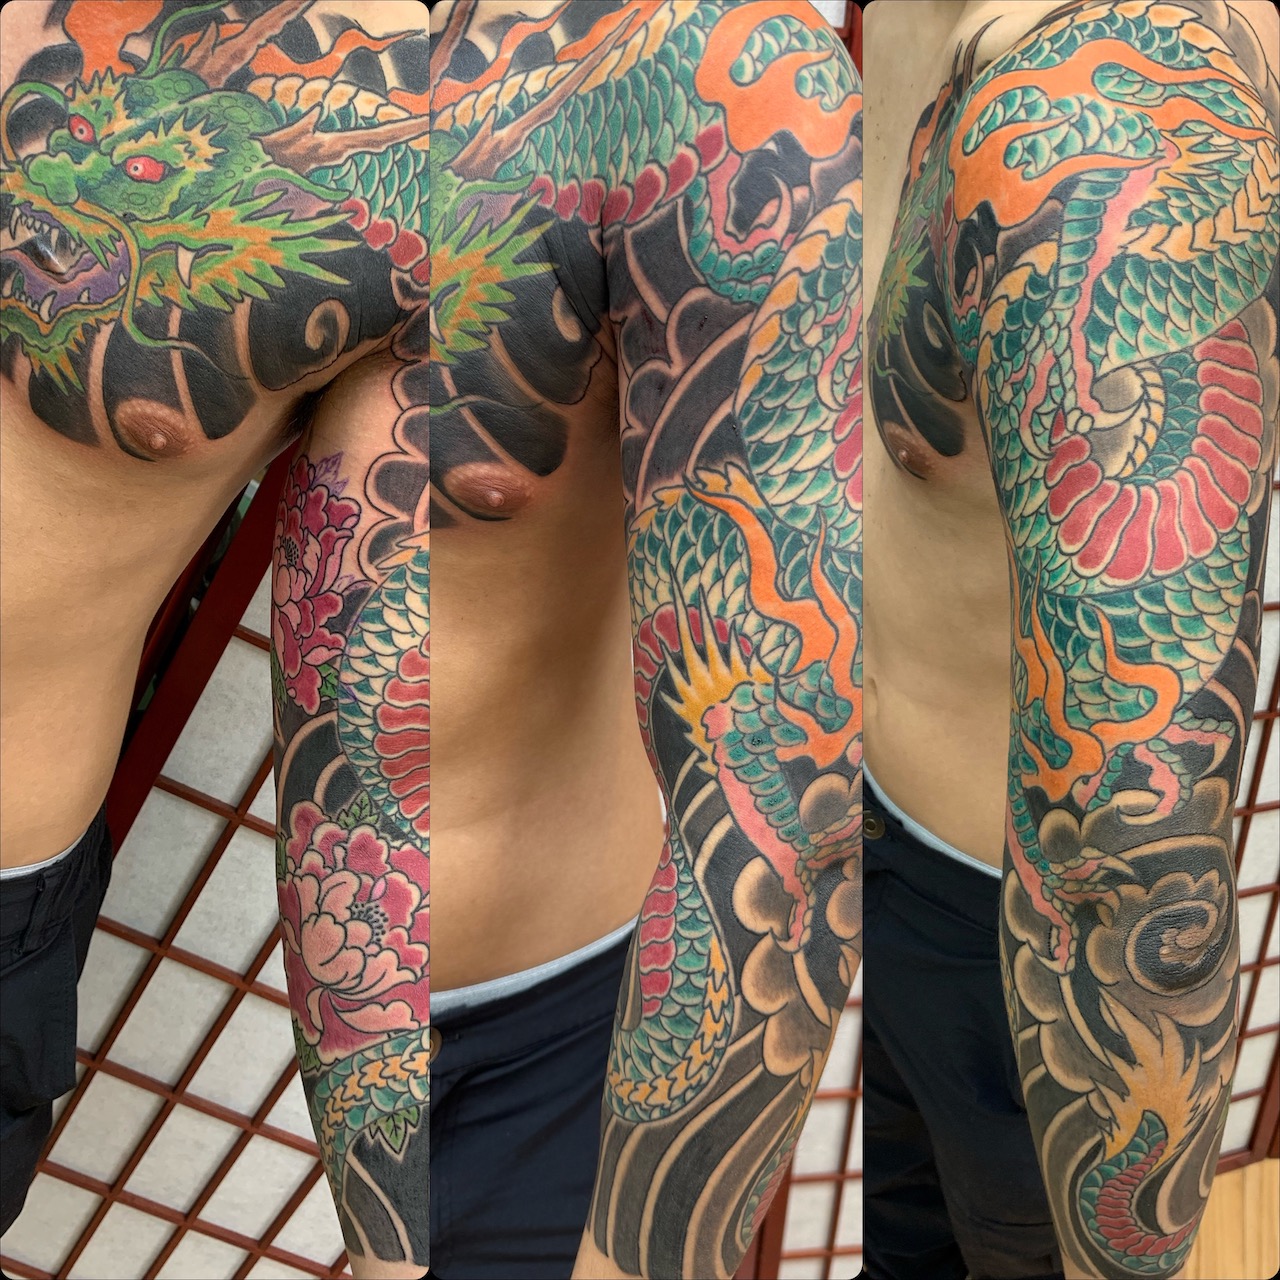 ocean sleeve tattoo ideas | Squid tattoo, Tattoo designs men, Tattoo designs